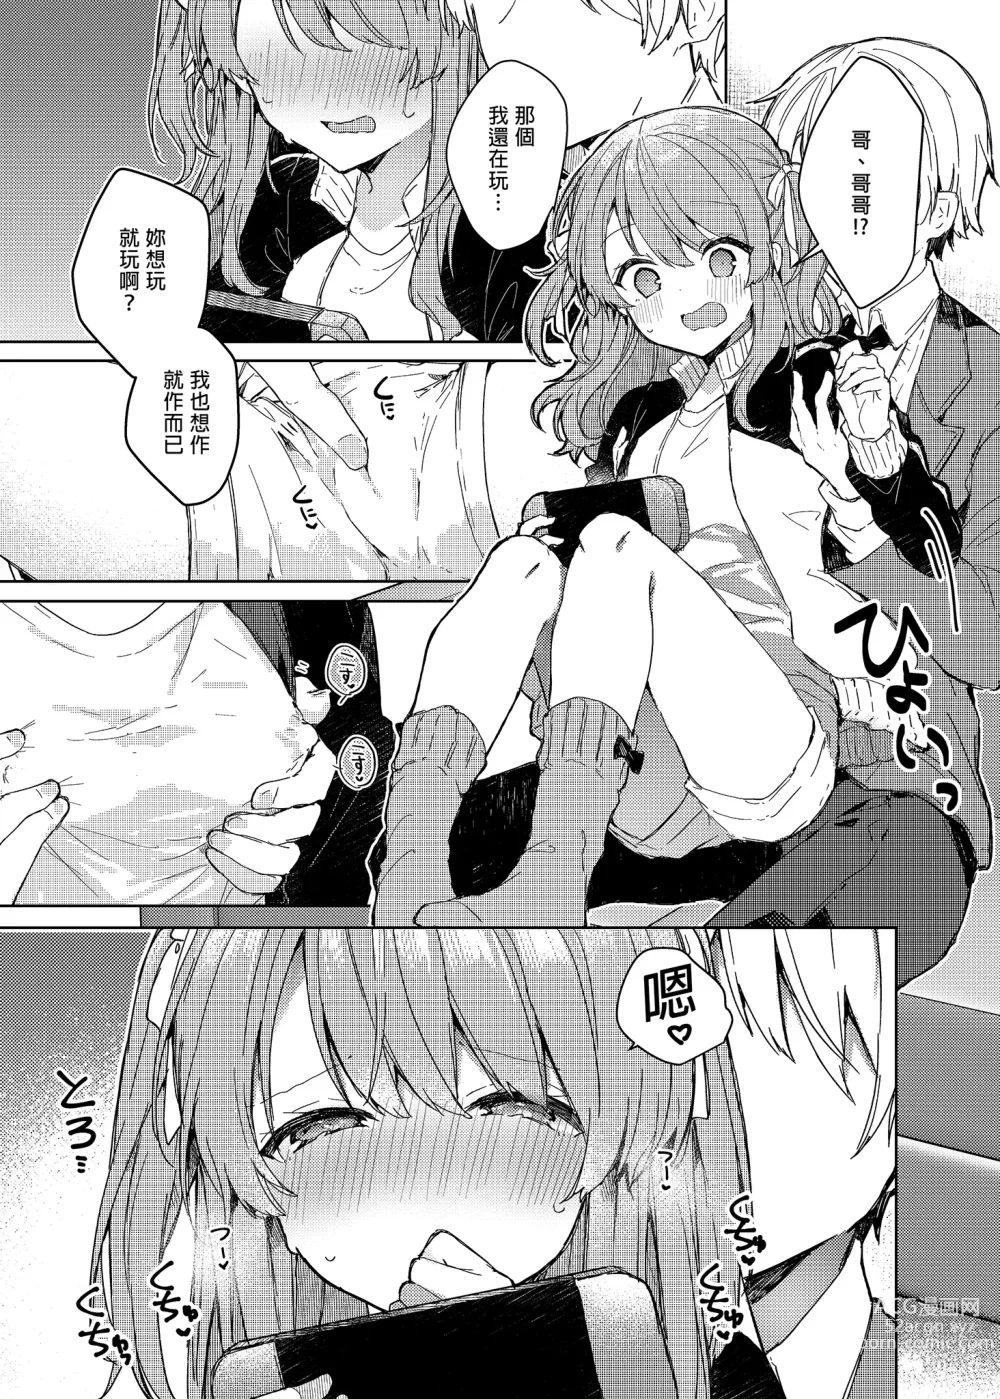 Page 37 of doujinshi 今天開始當個壞孩子。 (decensored)